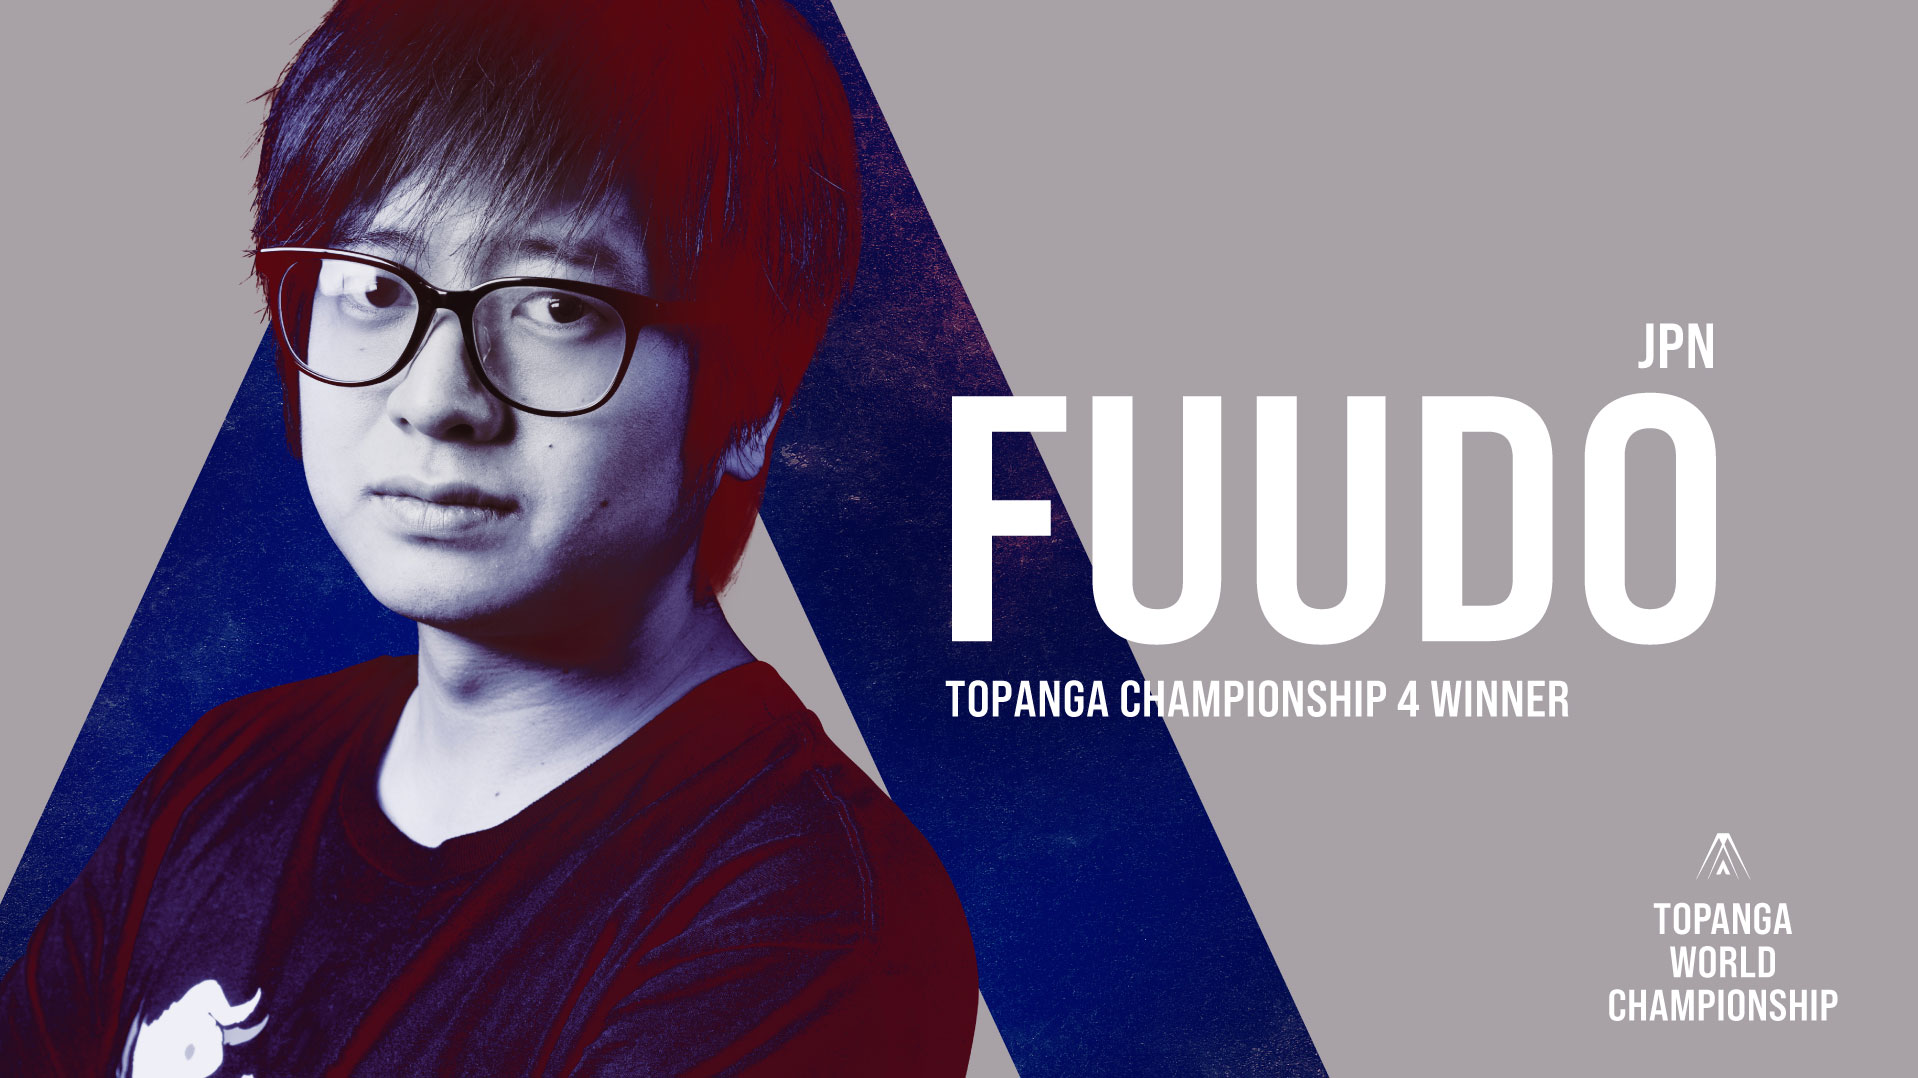 FUUDO|TOPANGA CHAMPIONSHIP 4 WINNER